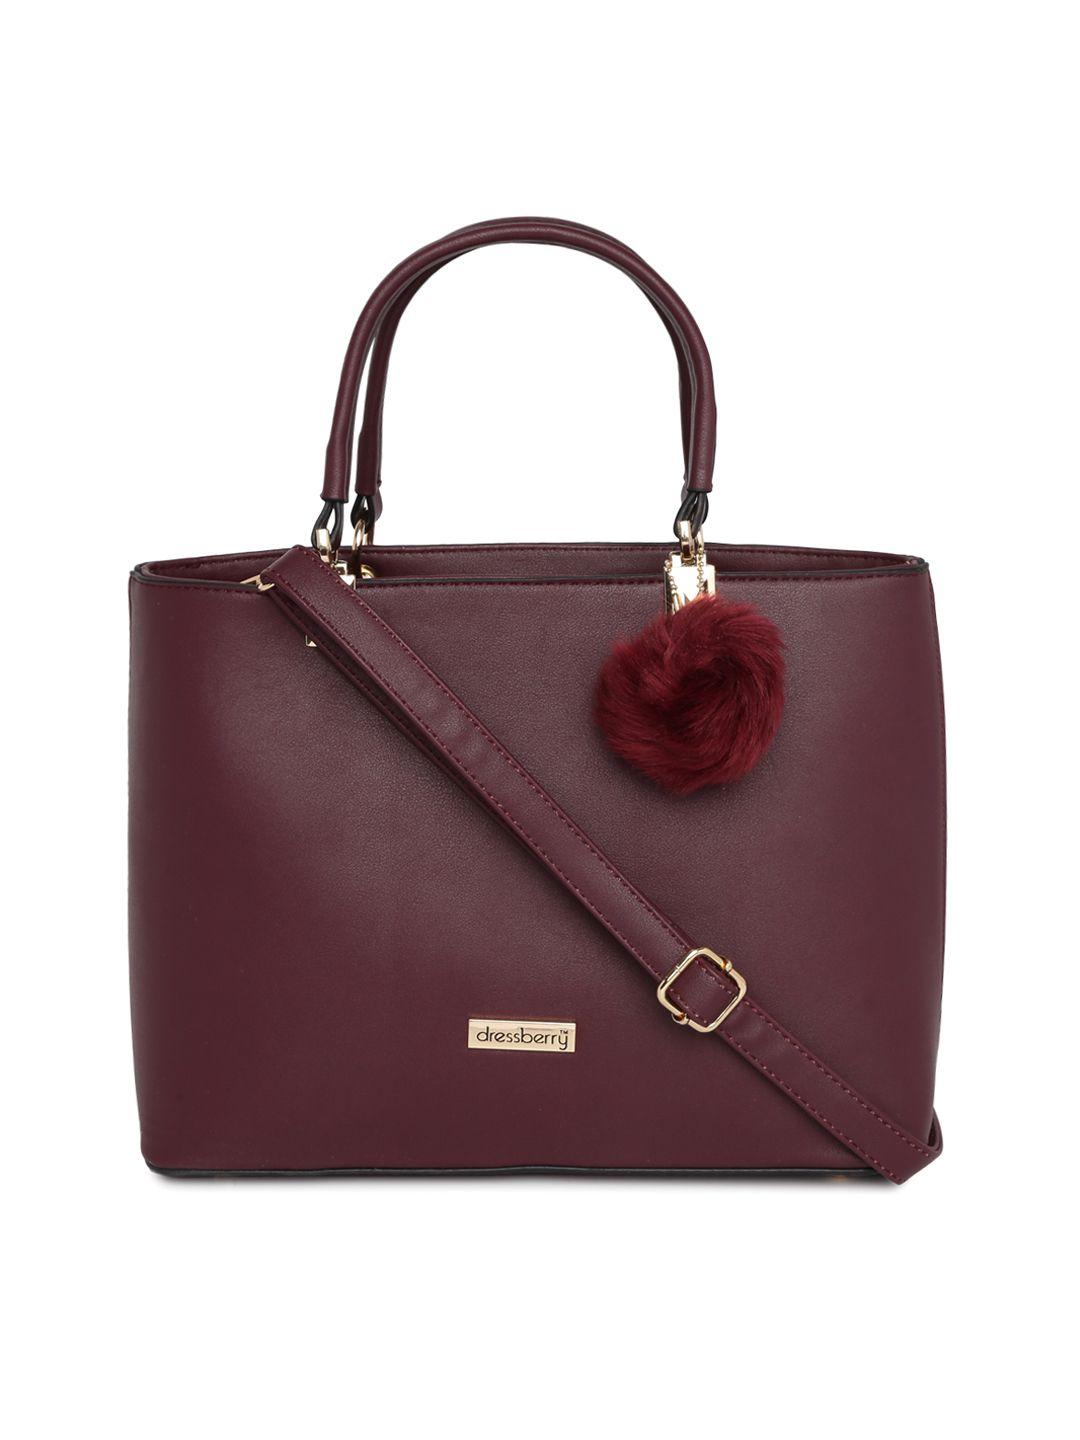 dressberry-burgundy-solid-handheld-bag